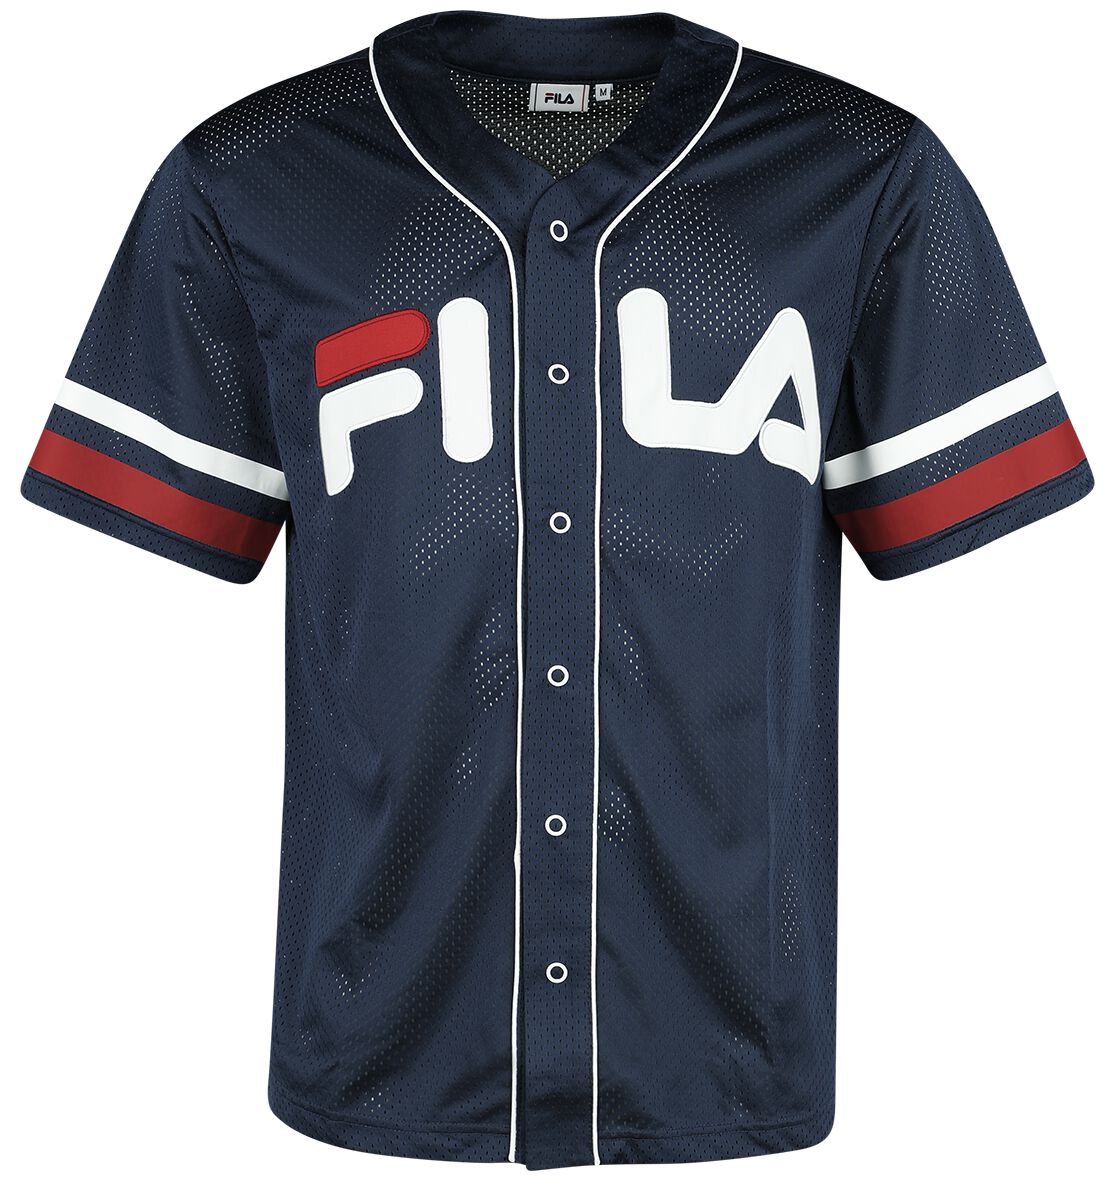 Image of Maglia Sportiva di Fila - LASHIO Baseball Shirt - S a XL - Uomo - blu scuro